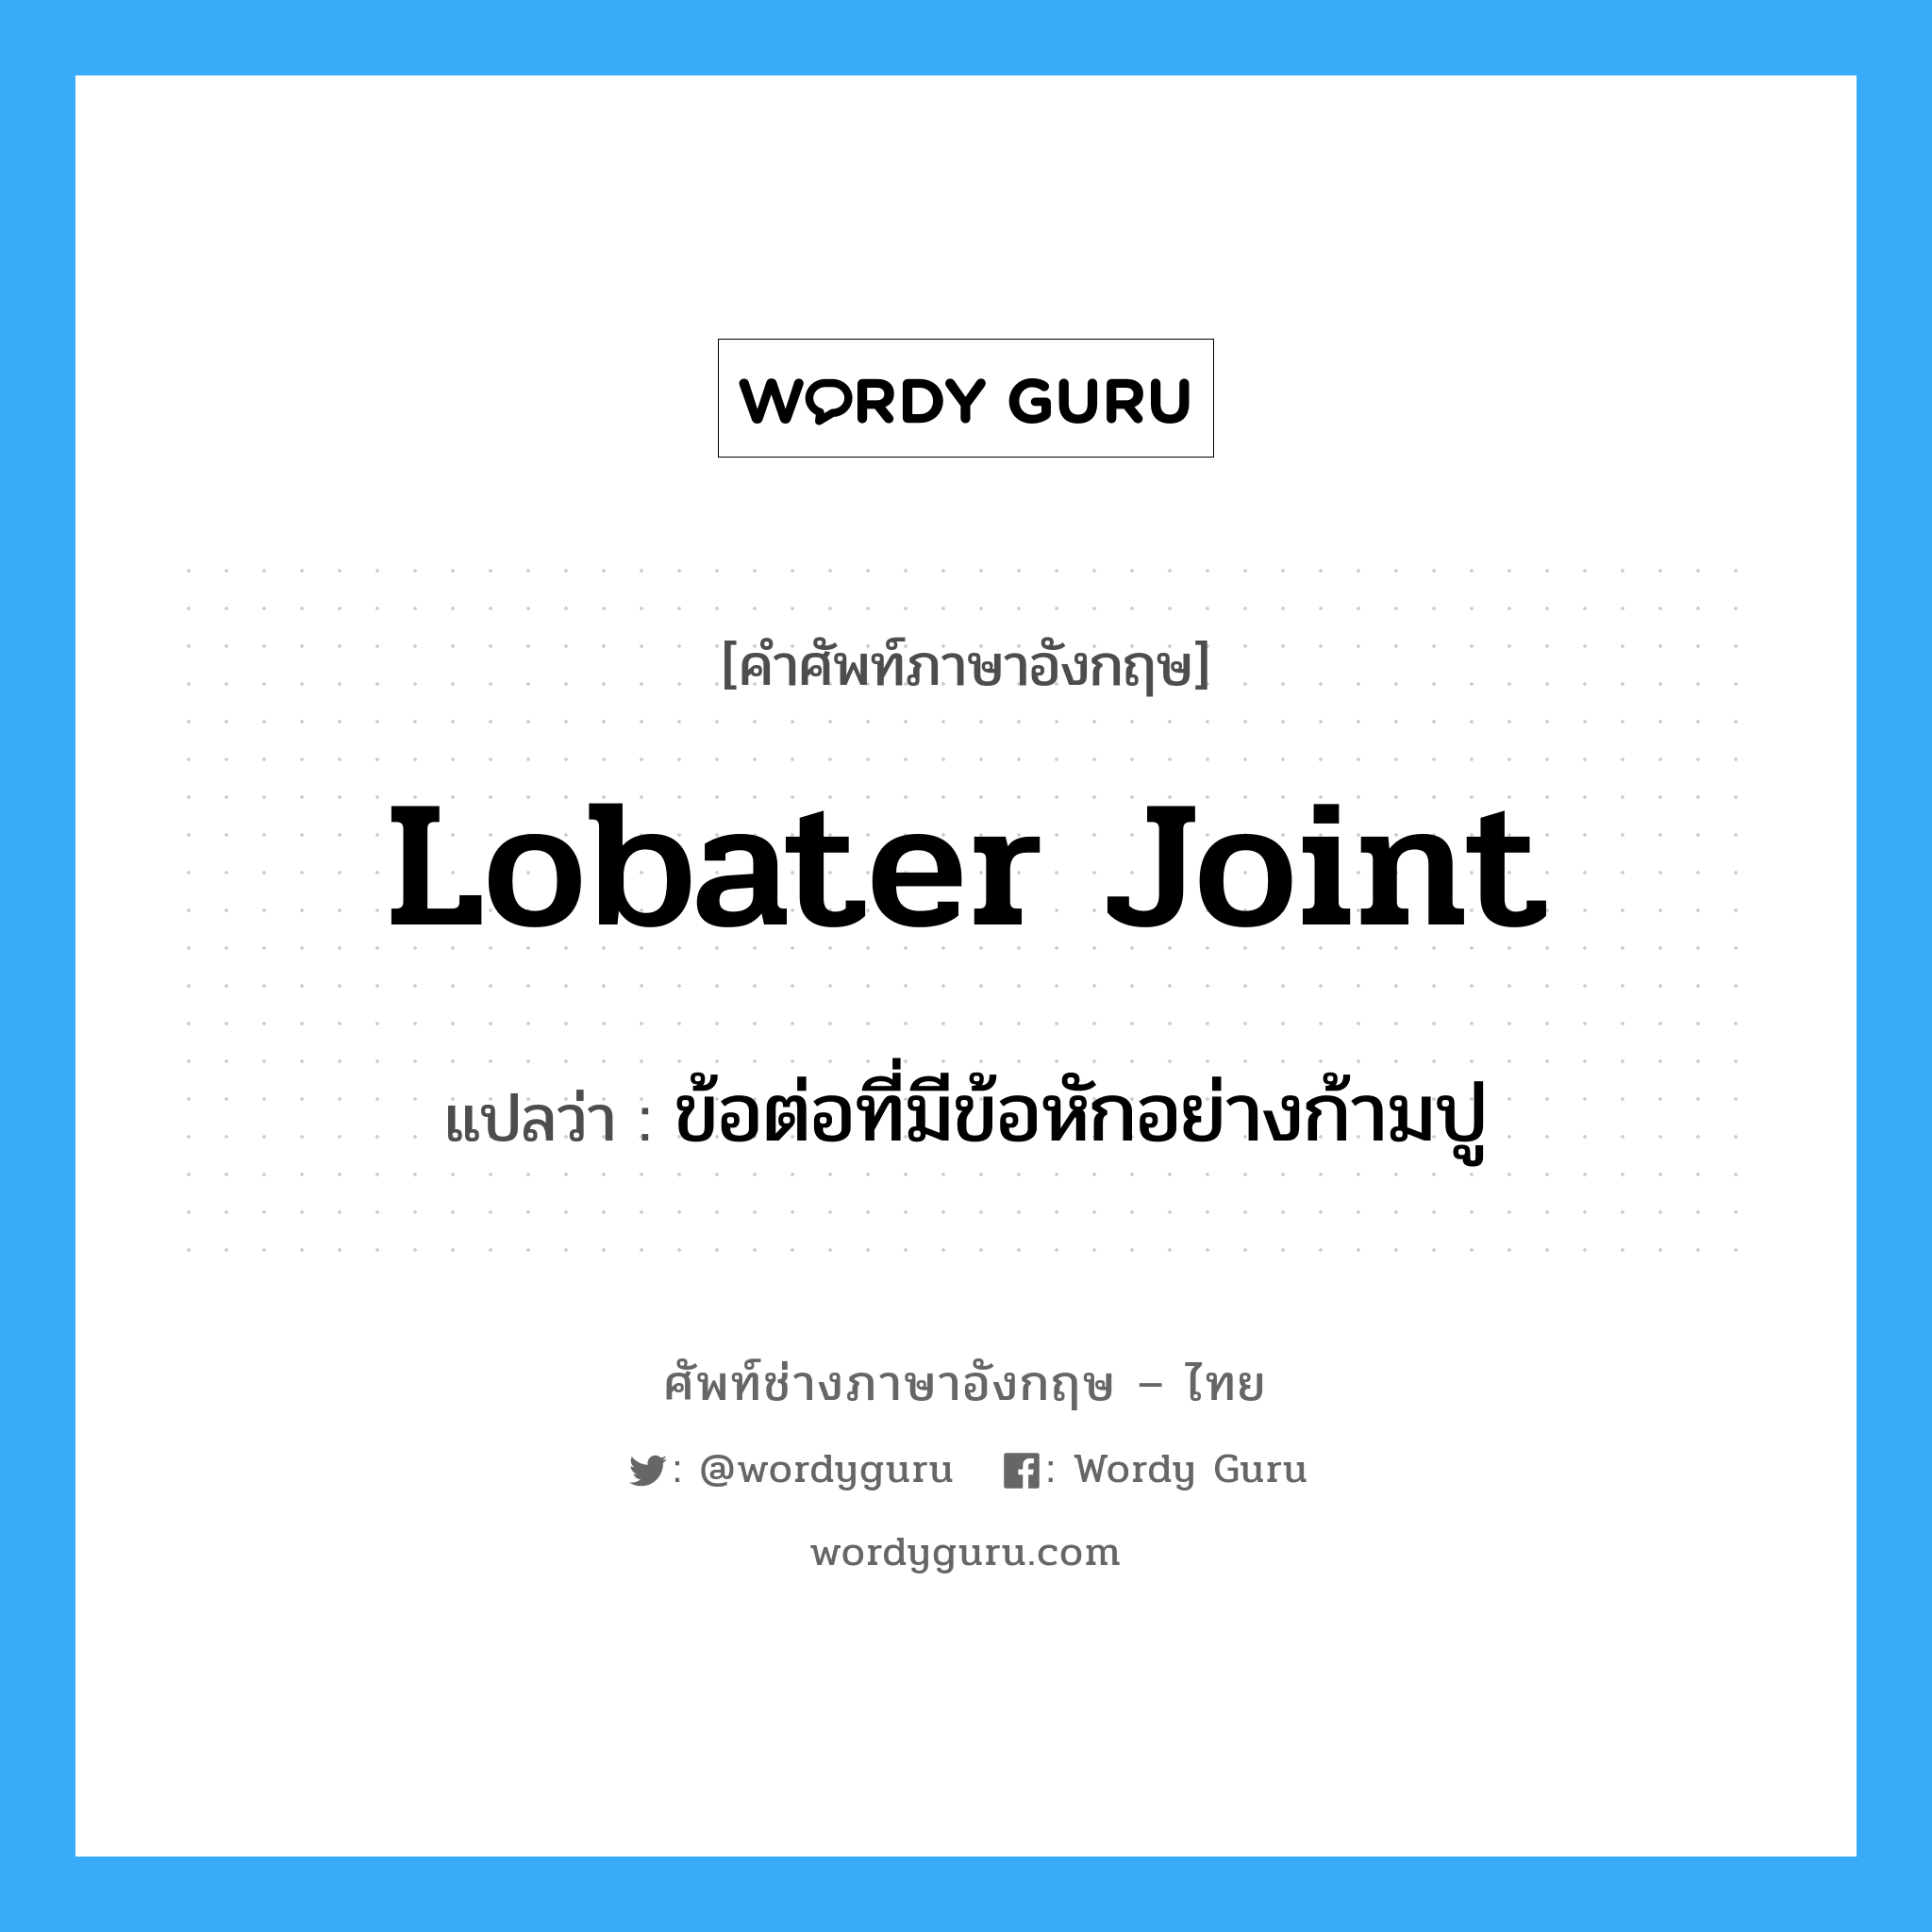 lobater joint แปลว่า?, คำศัพท์ช่างภาษาอังกฤษ - ไทย lobater joint คำศัพท์ภาษาอังกฤษ lobater joint แปลว่า ข้อต่อที่มีข้อหักอย่างก้ามปู